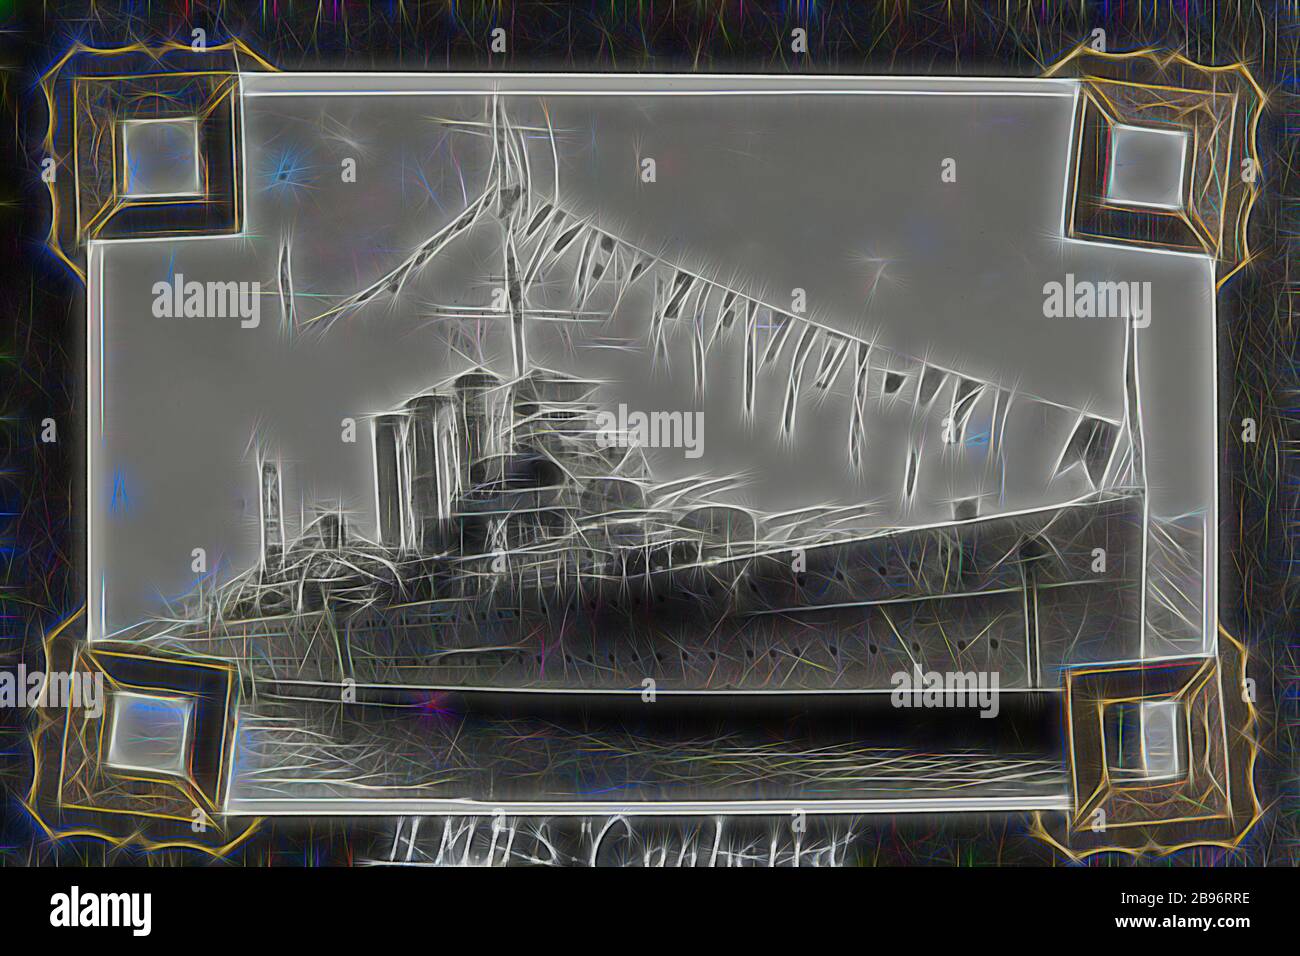 Fotografia - 'HMAS Canberra', 1937-1939, fotografia in bianco e nero di H.M.A.S Canberra. Una delle 48 fotografie di un album fotografico. Preso da D.R.Goodwin, Royal Australian Navy (R.A. n.) 1937-1939. Le immagini sono di H.M.A.S Cerberus e di altre navi navali, addestramento navale e personale di armi da campo., Reimagined da Gibon, disegno di calore allegro di luminosità e raggi di luce radianza. Arte classica reinventata con un tocco moderno. La fotografia ispirata al futurismo, che abbraccia l'energia dinamica della tecnologia moderna, del movimento, della velocità e rivoluziona la cultura. Foto Stock